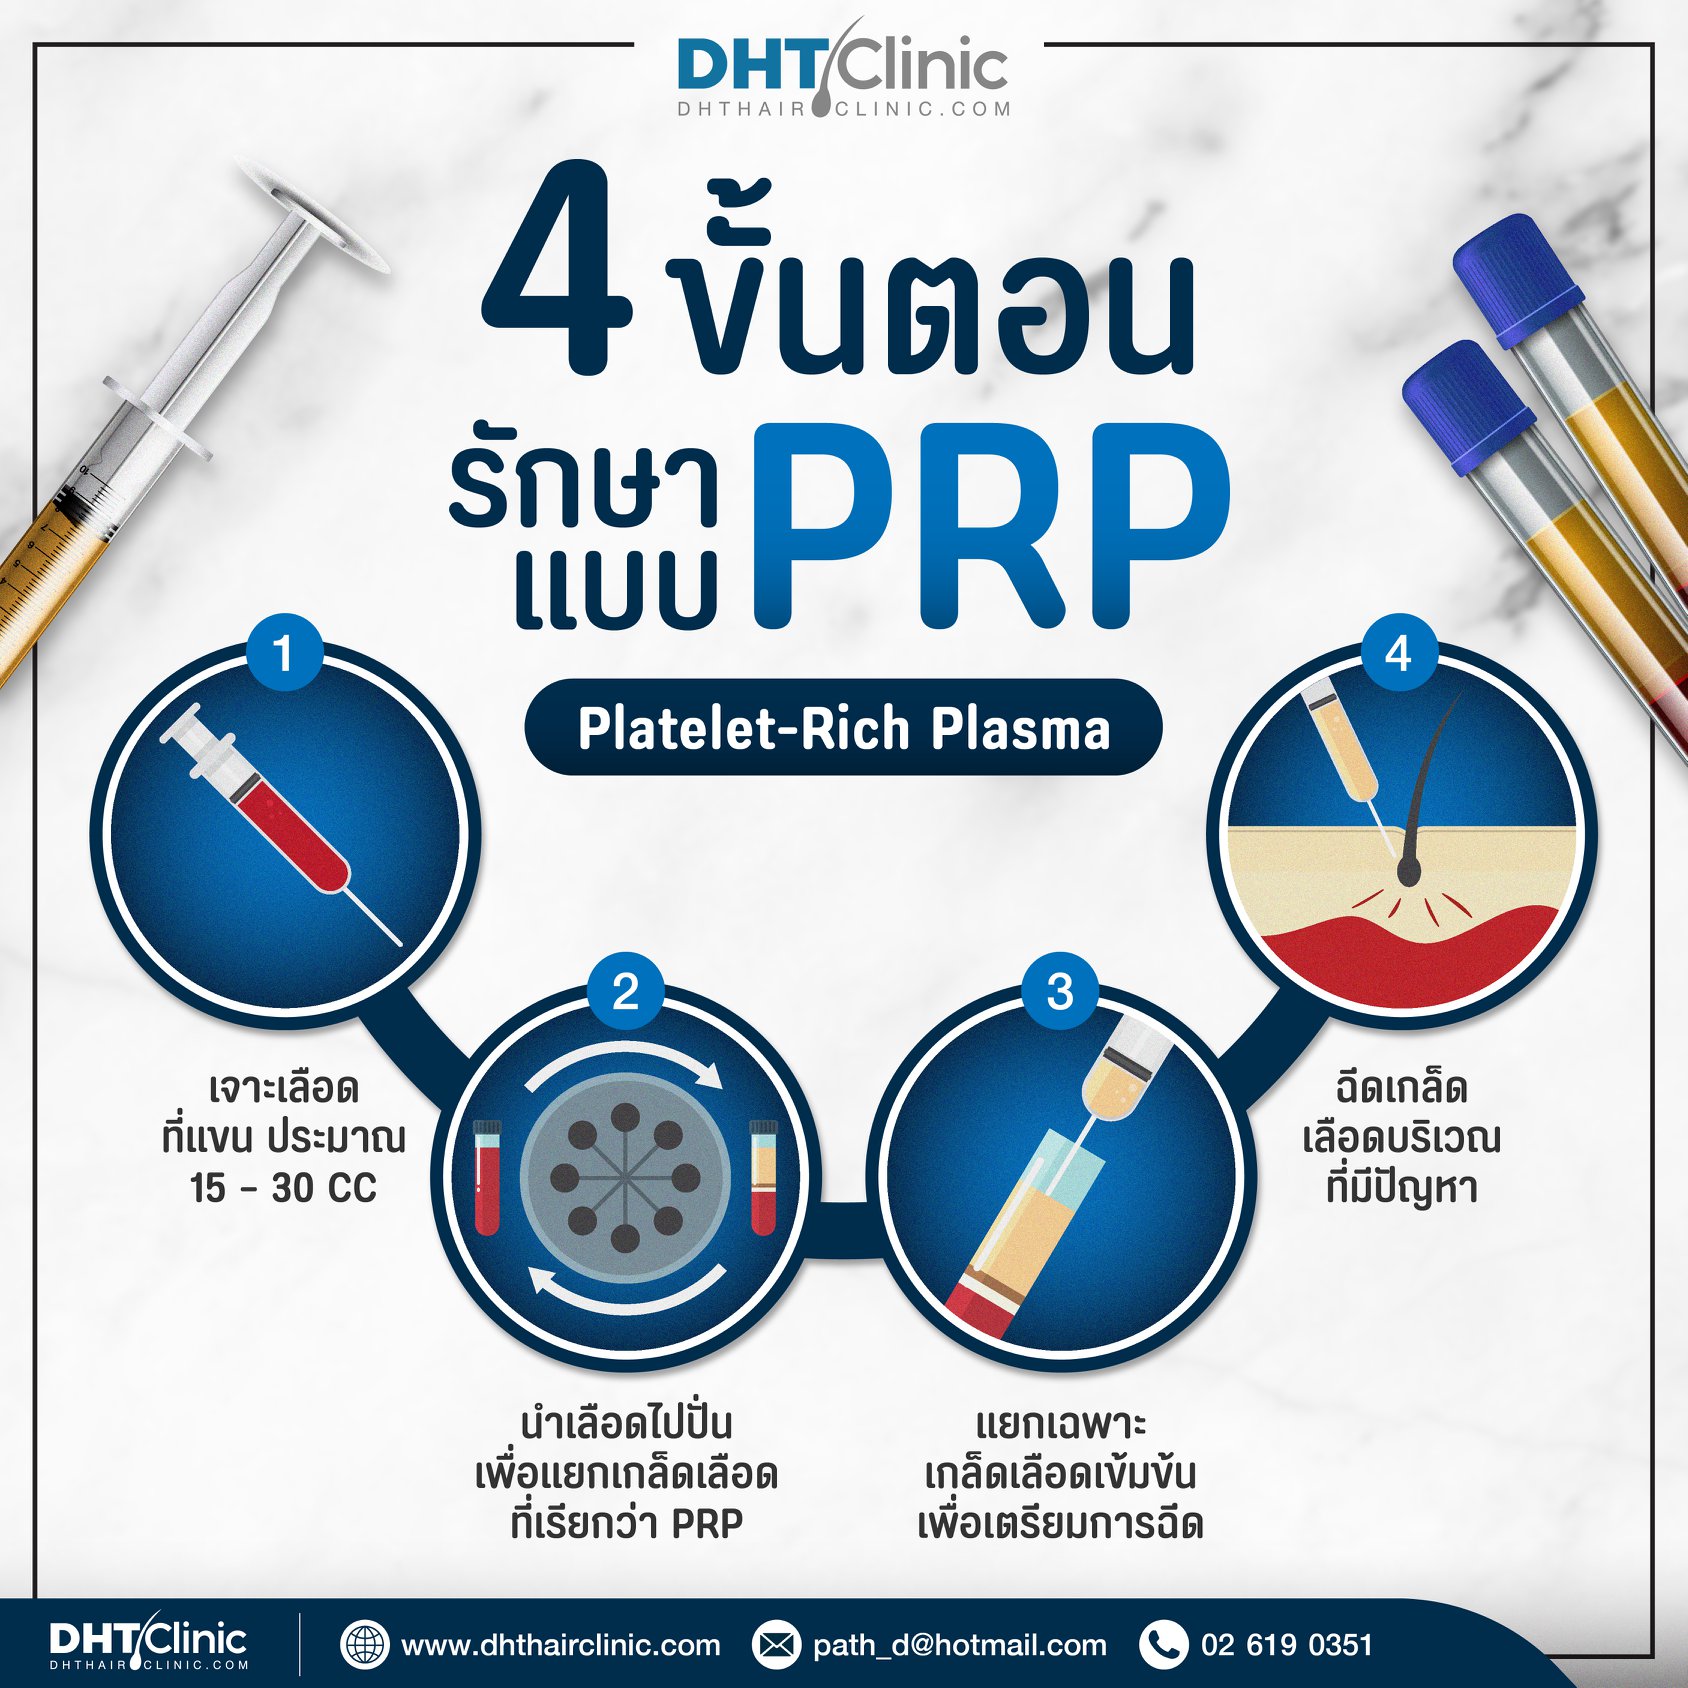 4 ขั้นตอน รักษาแบบ PRP (Platelet-Rich Plasma) มีอะไรบ้าง?